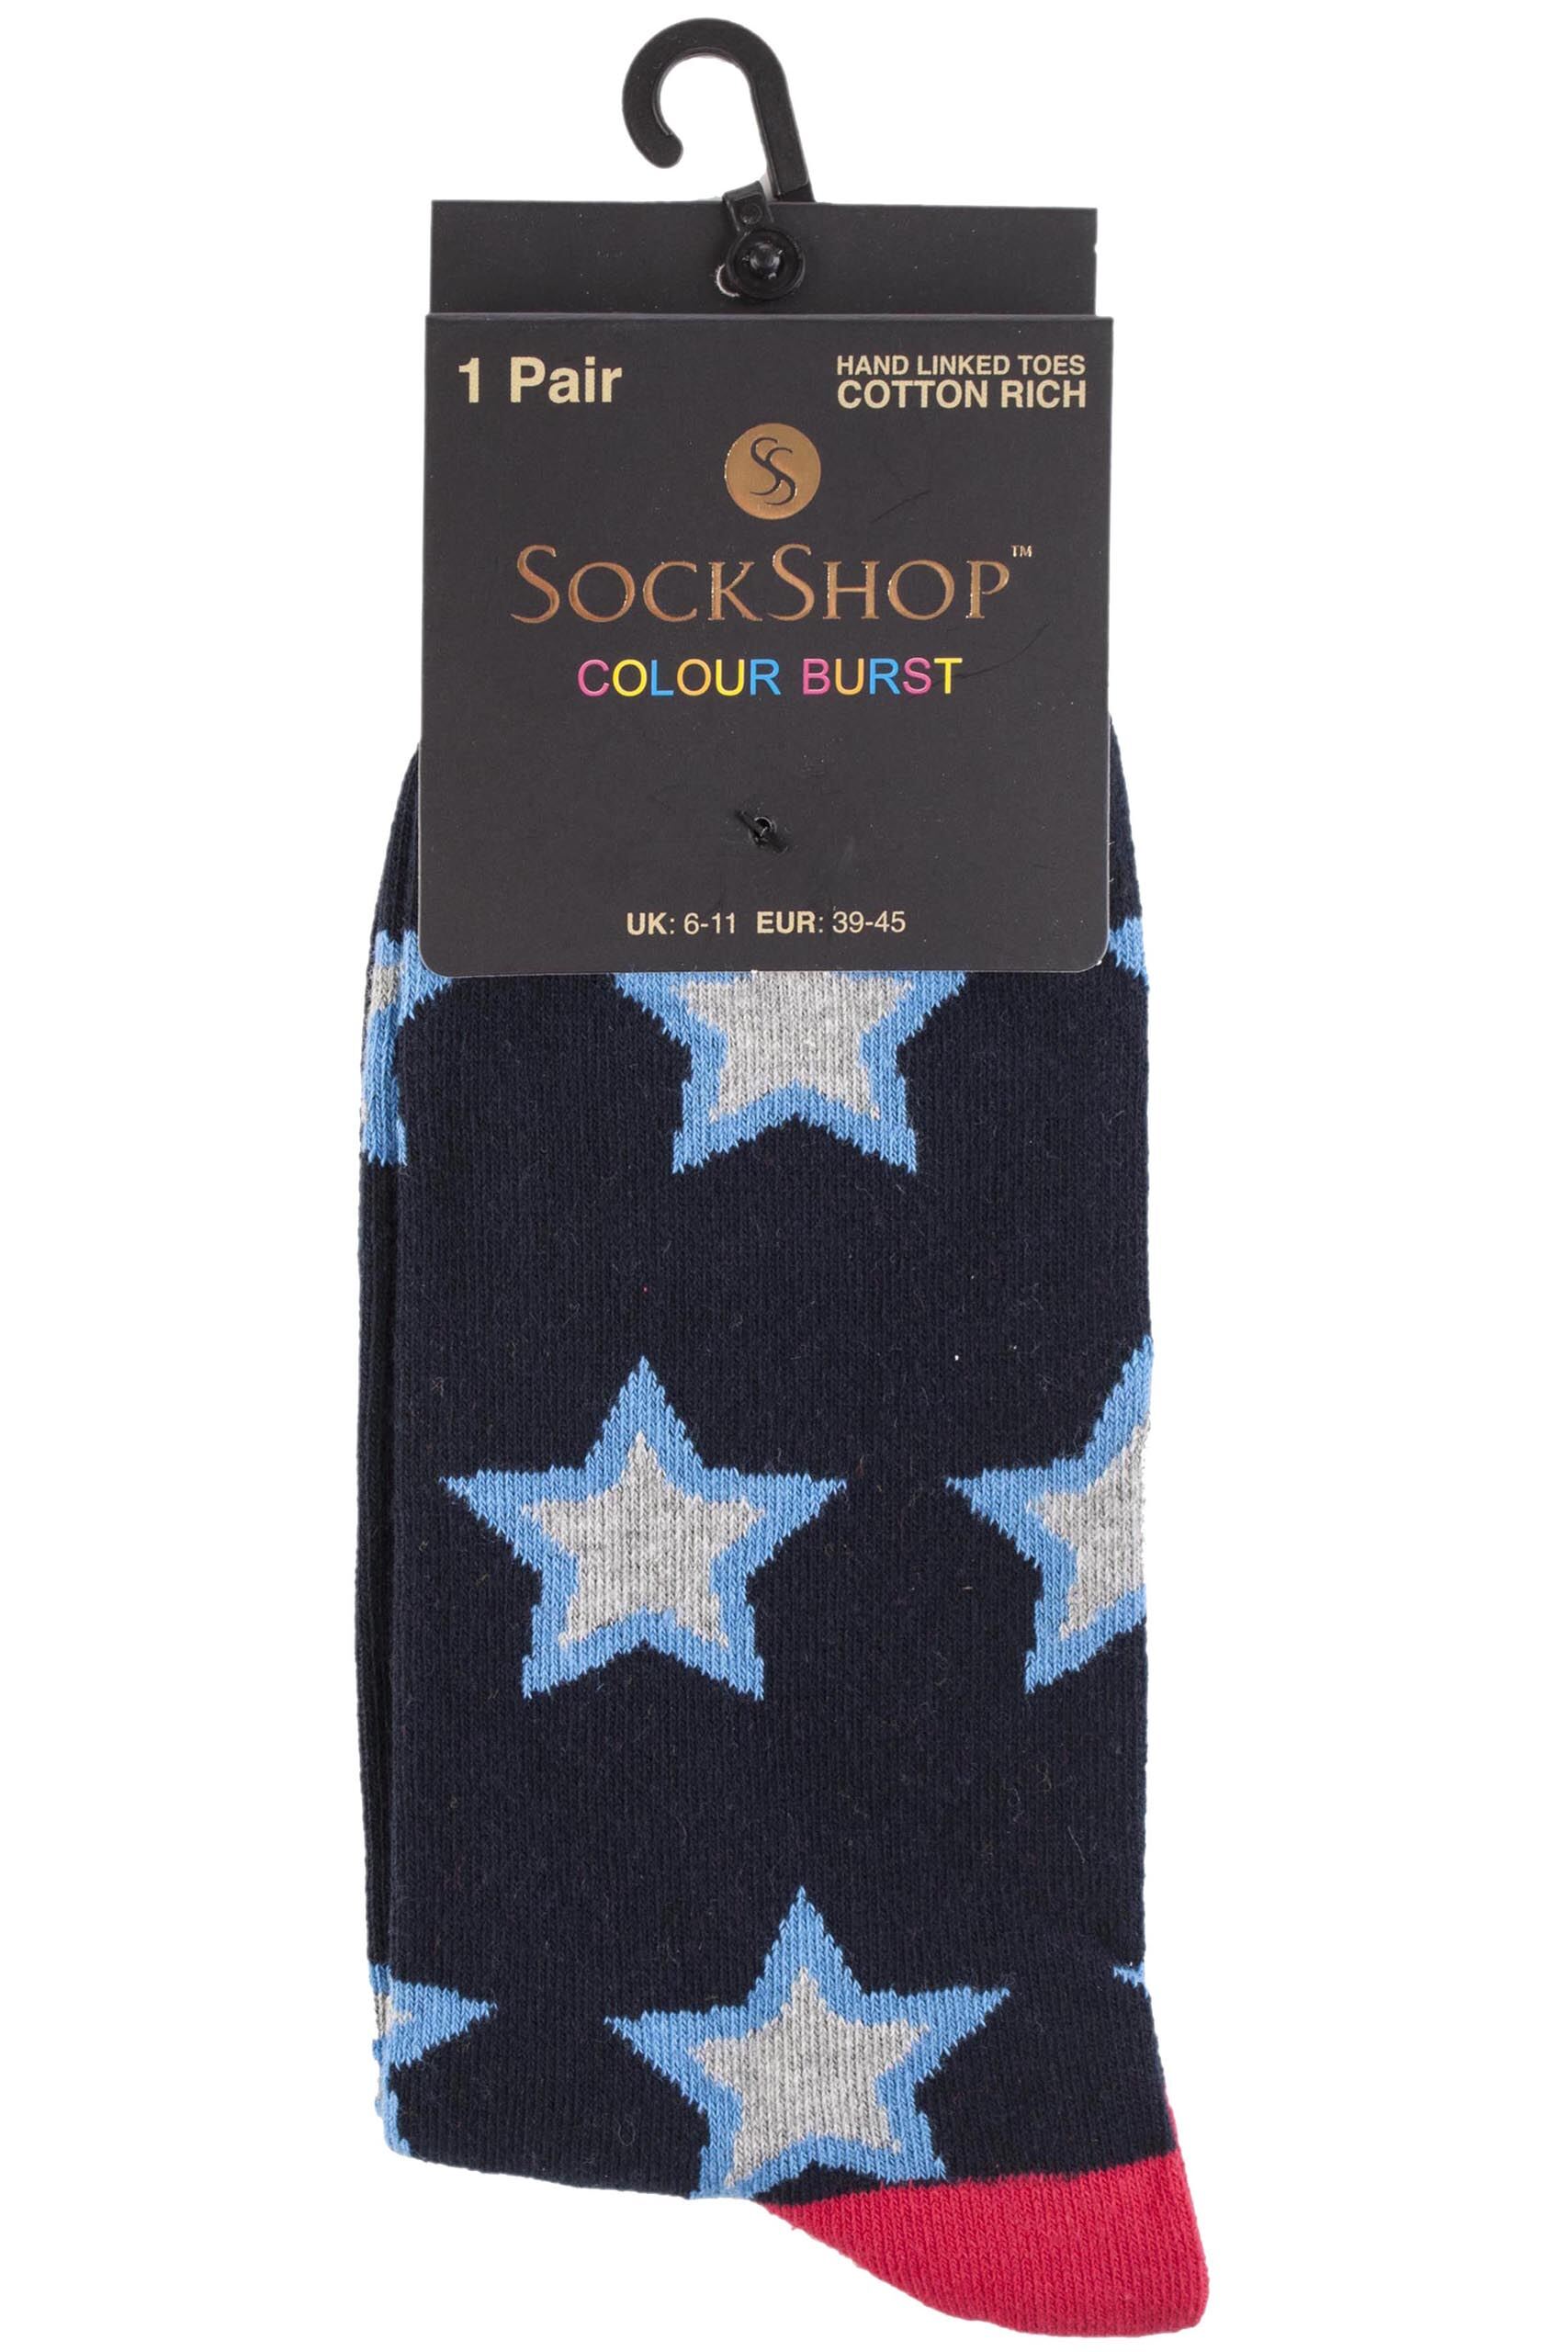 SockShop Colour Burst Patterns Cotton Socks | SockShop